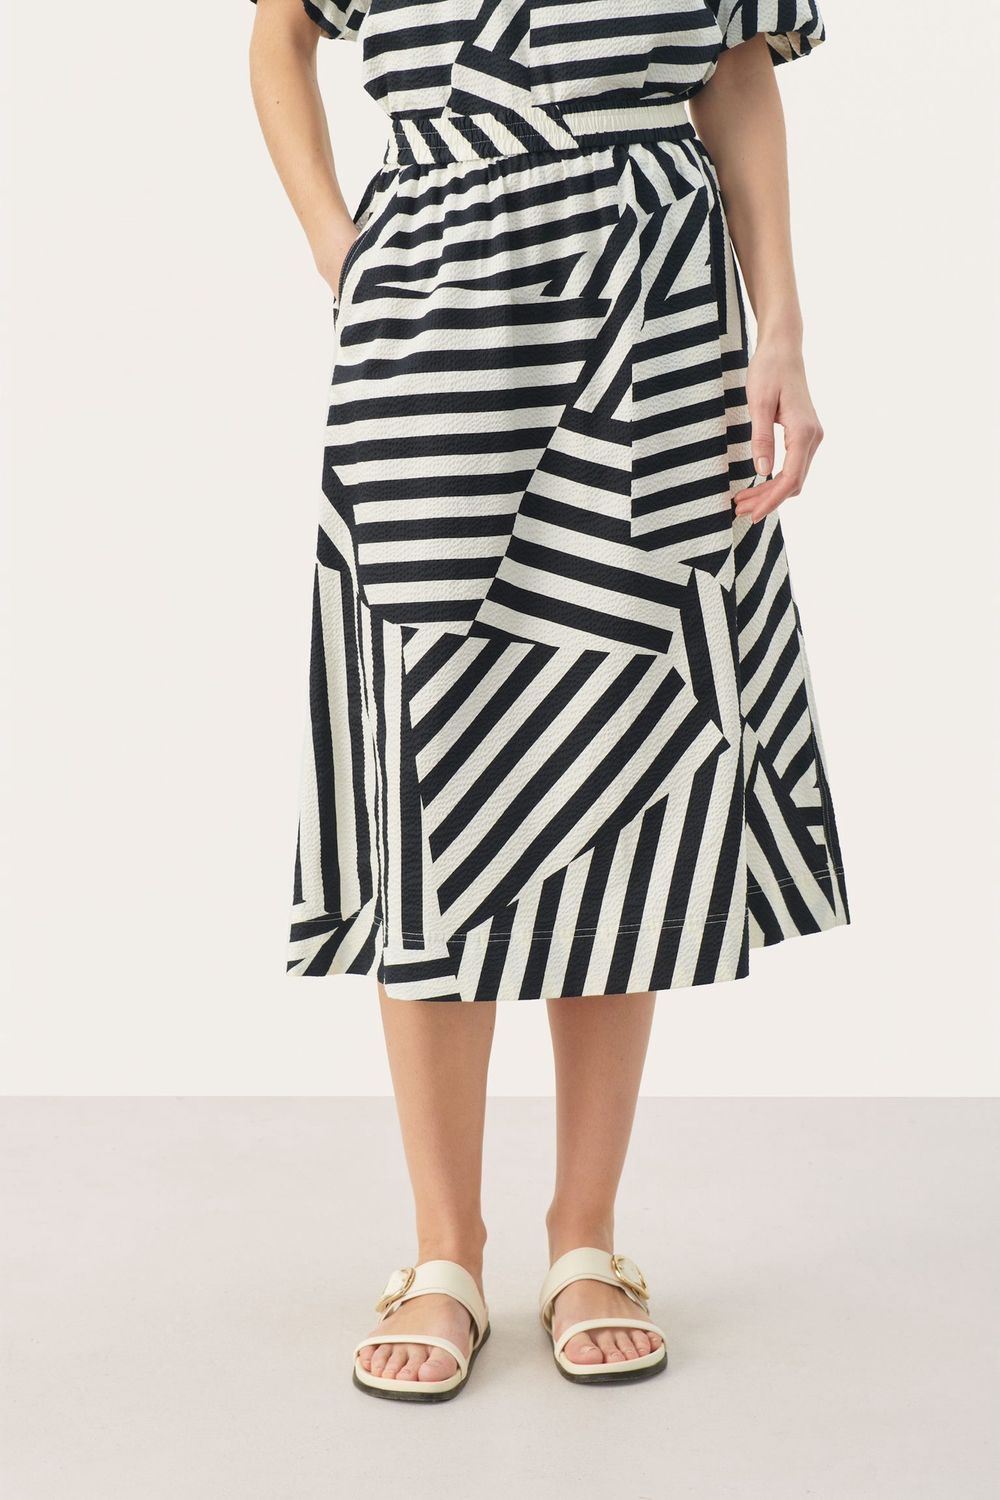 Emmeline Skirt, Color: Navy Stripe, Size: 34